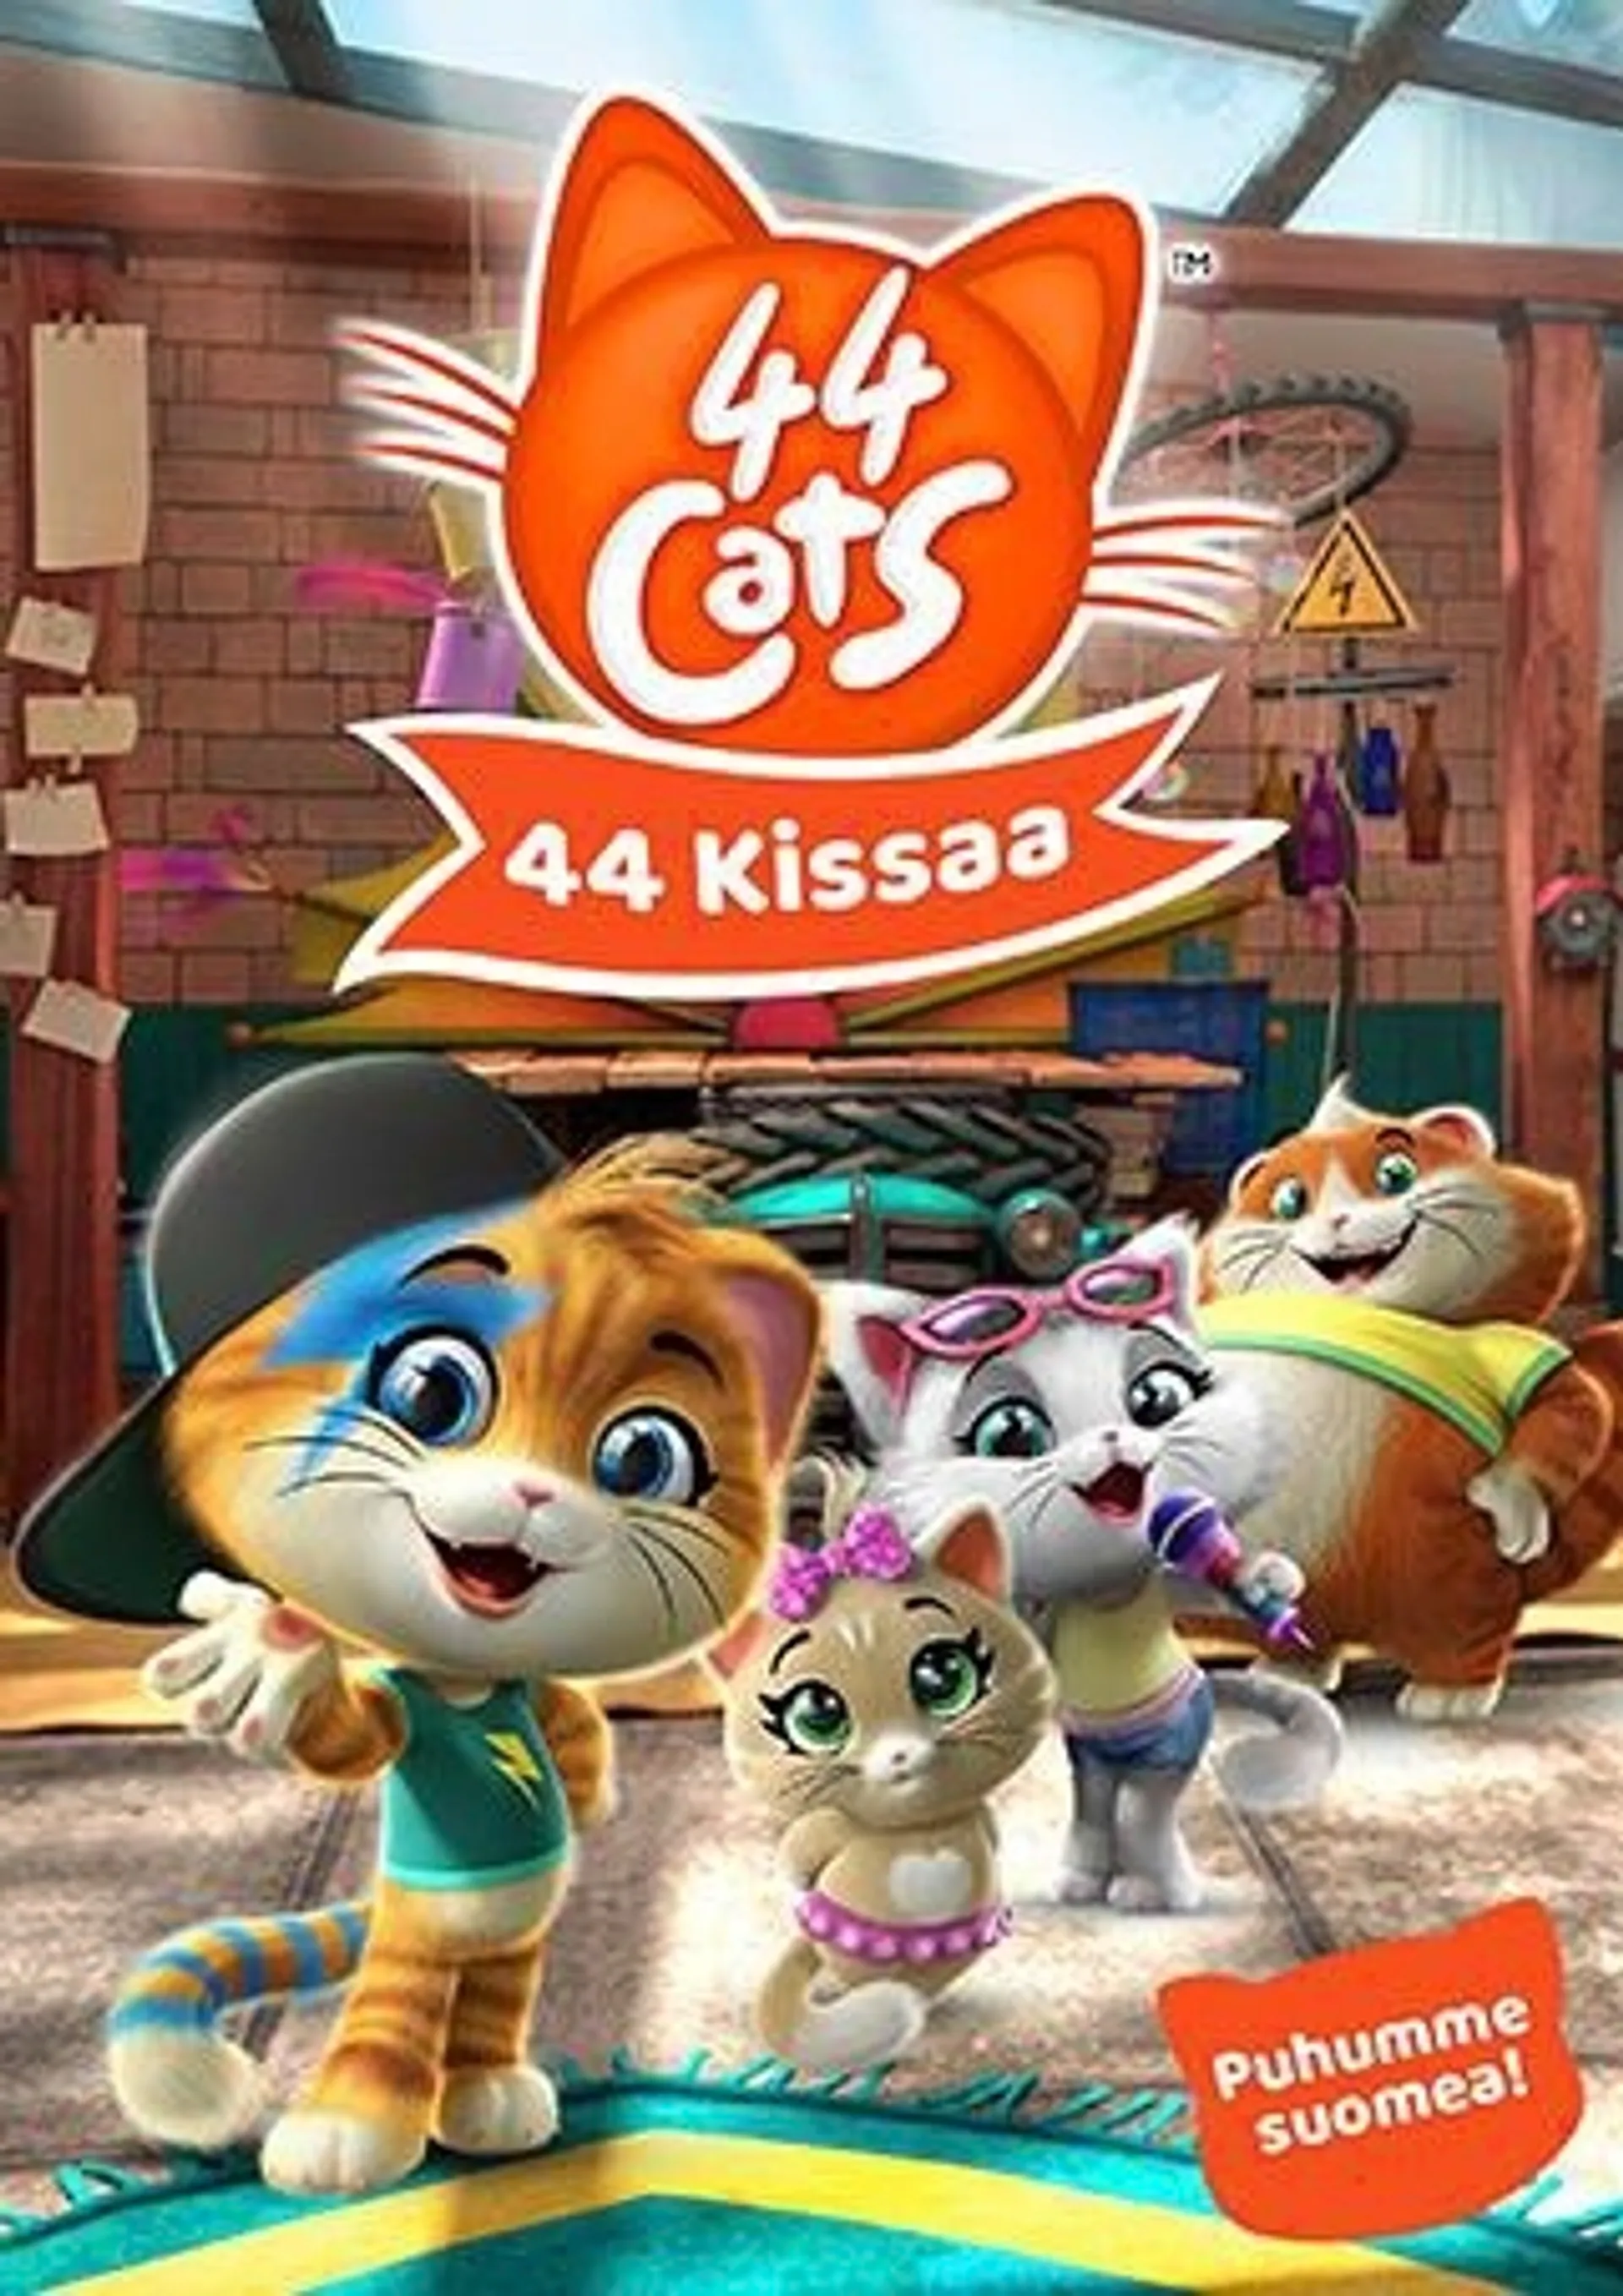 44 Cats 3 - 44 Kissaa DVD